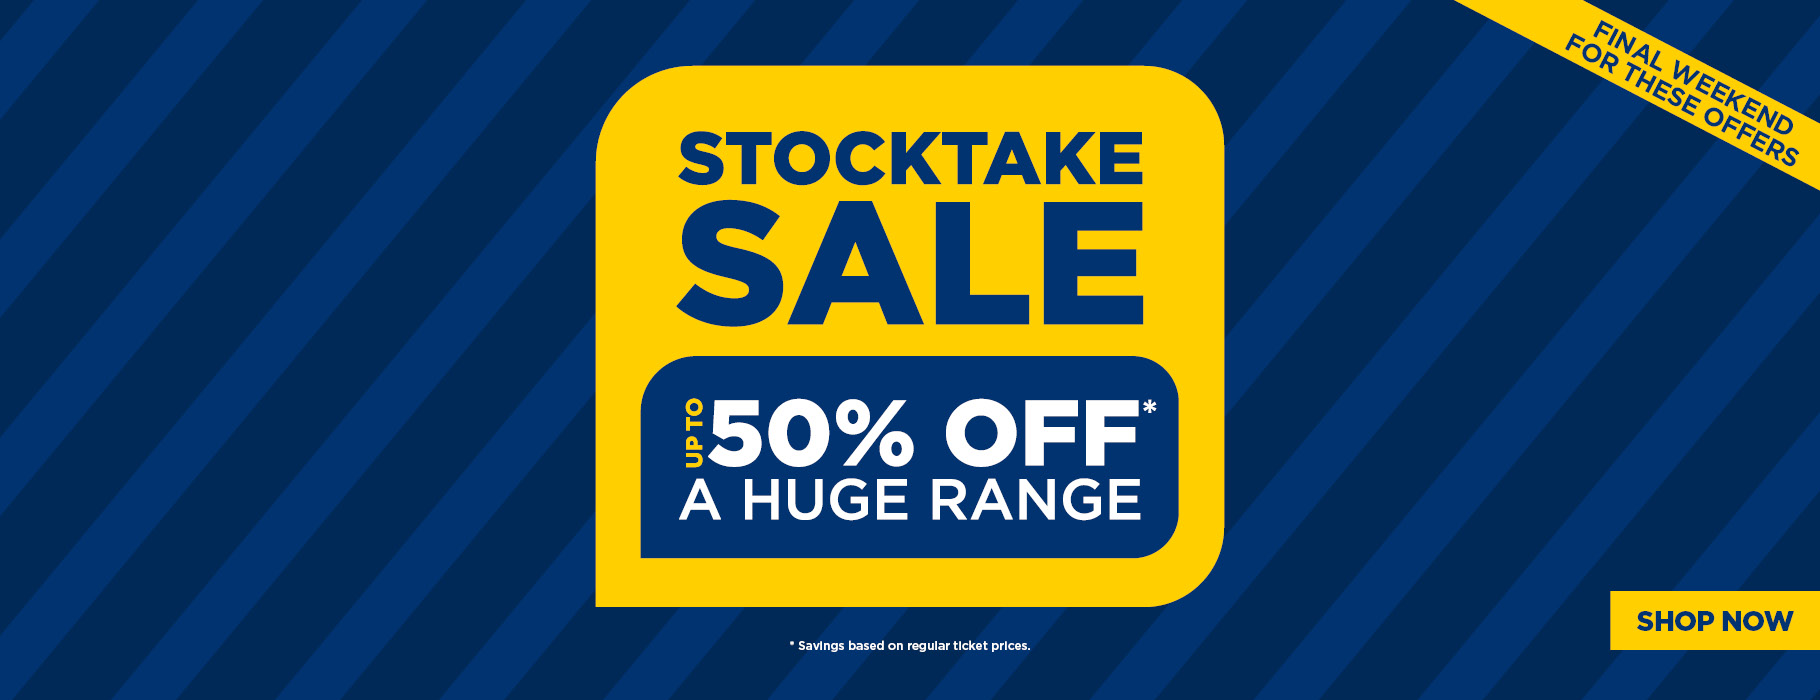 Amart Furniture Stocktake sale up to 50% OFF on a huge range including furniture, sofas, & more